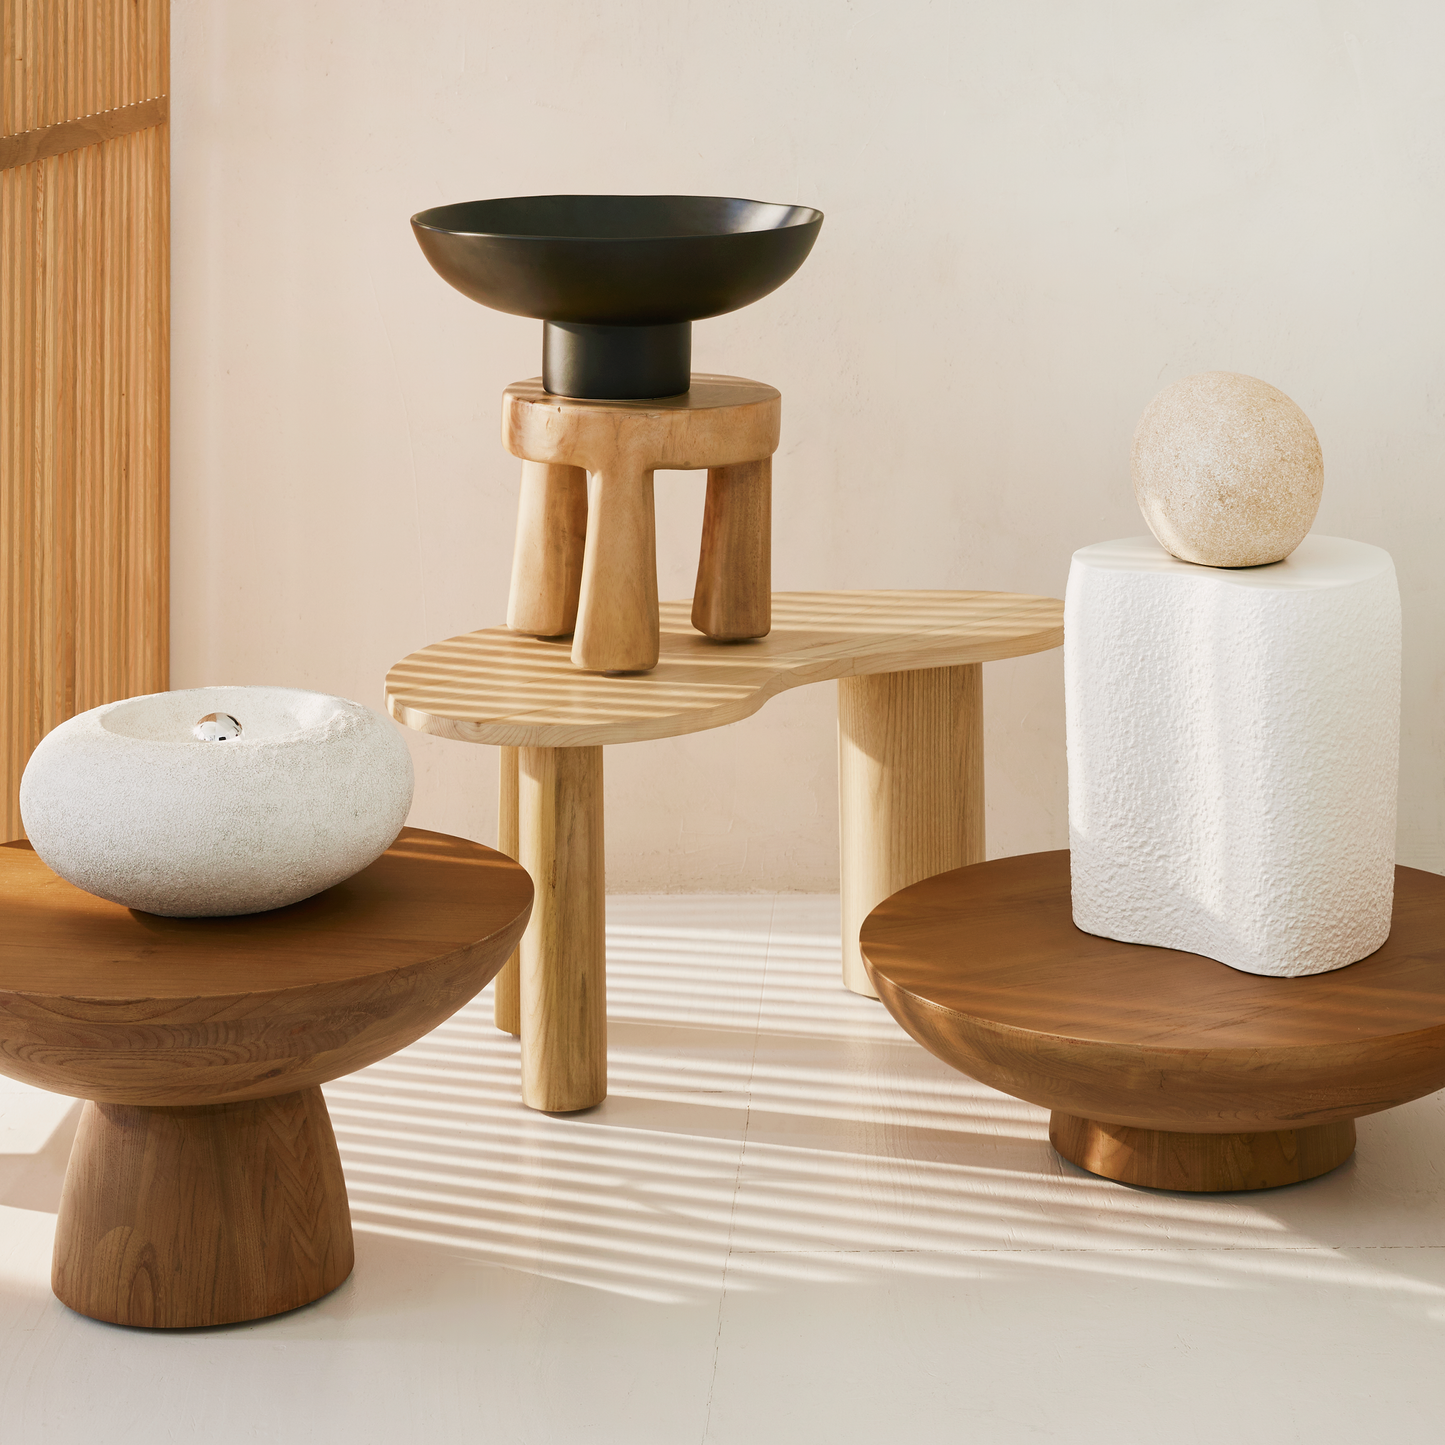 Coffee table ronde en bois de sunkai fait-mainMaison Bloom Concept 